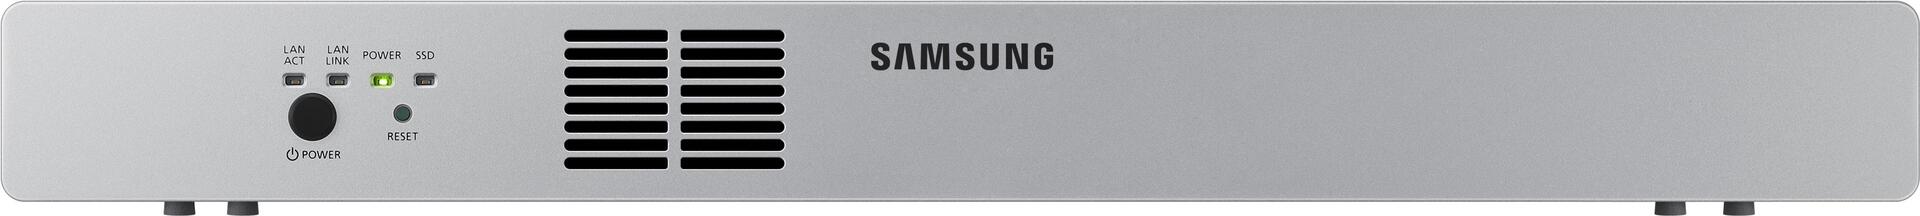 Samsung CY-HDS02A Server 128 GB Rack (1U) 1,6 GHz 4 GB Windows Embedded Standard 7 (CY-HDS02B/EN)